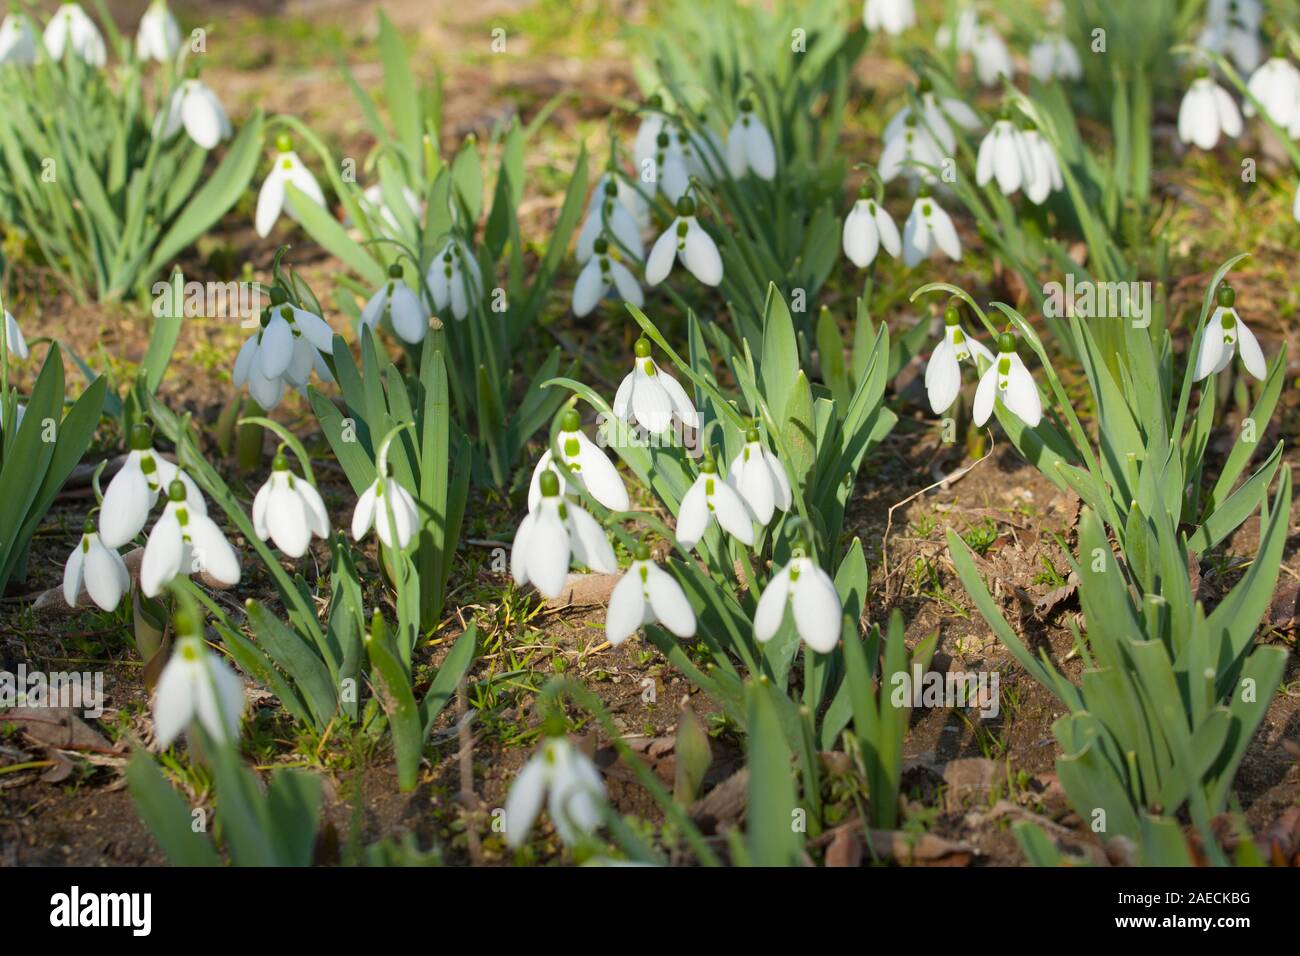 Viele Schneeglöckchen erste Frühlingsblumen weiße Farbe - am Boden, St. St.  Konstantin und Helena, Bulgarien Stockfotografie - Alamy